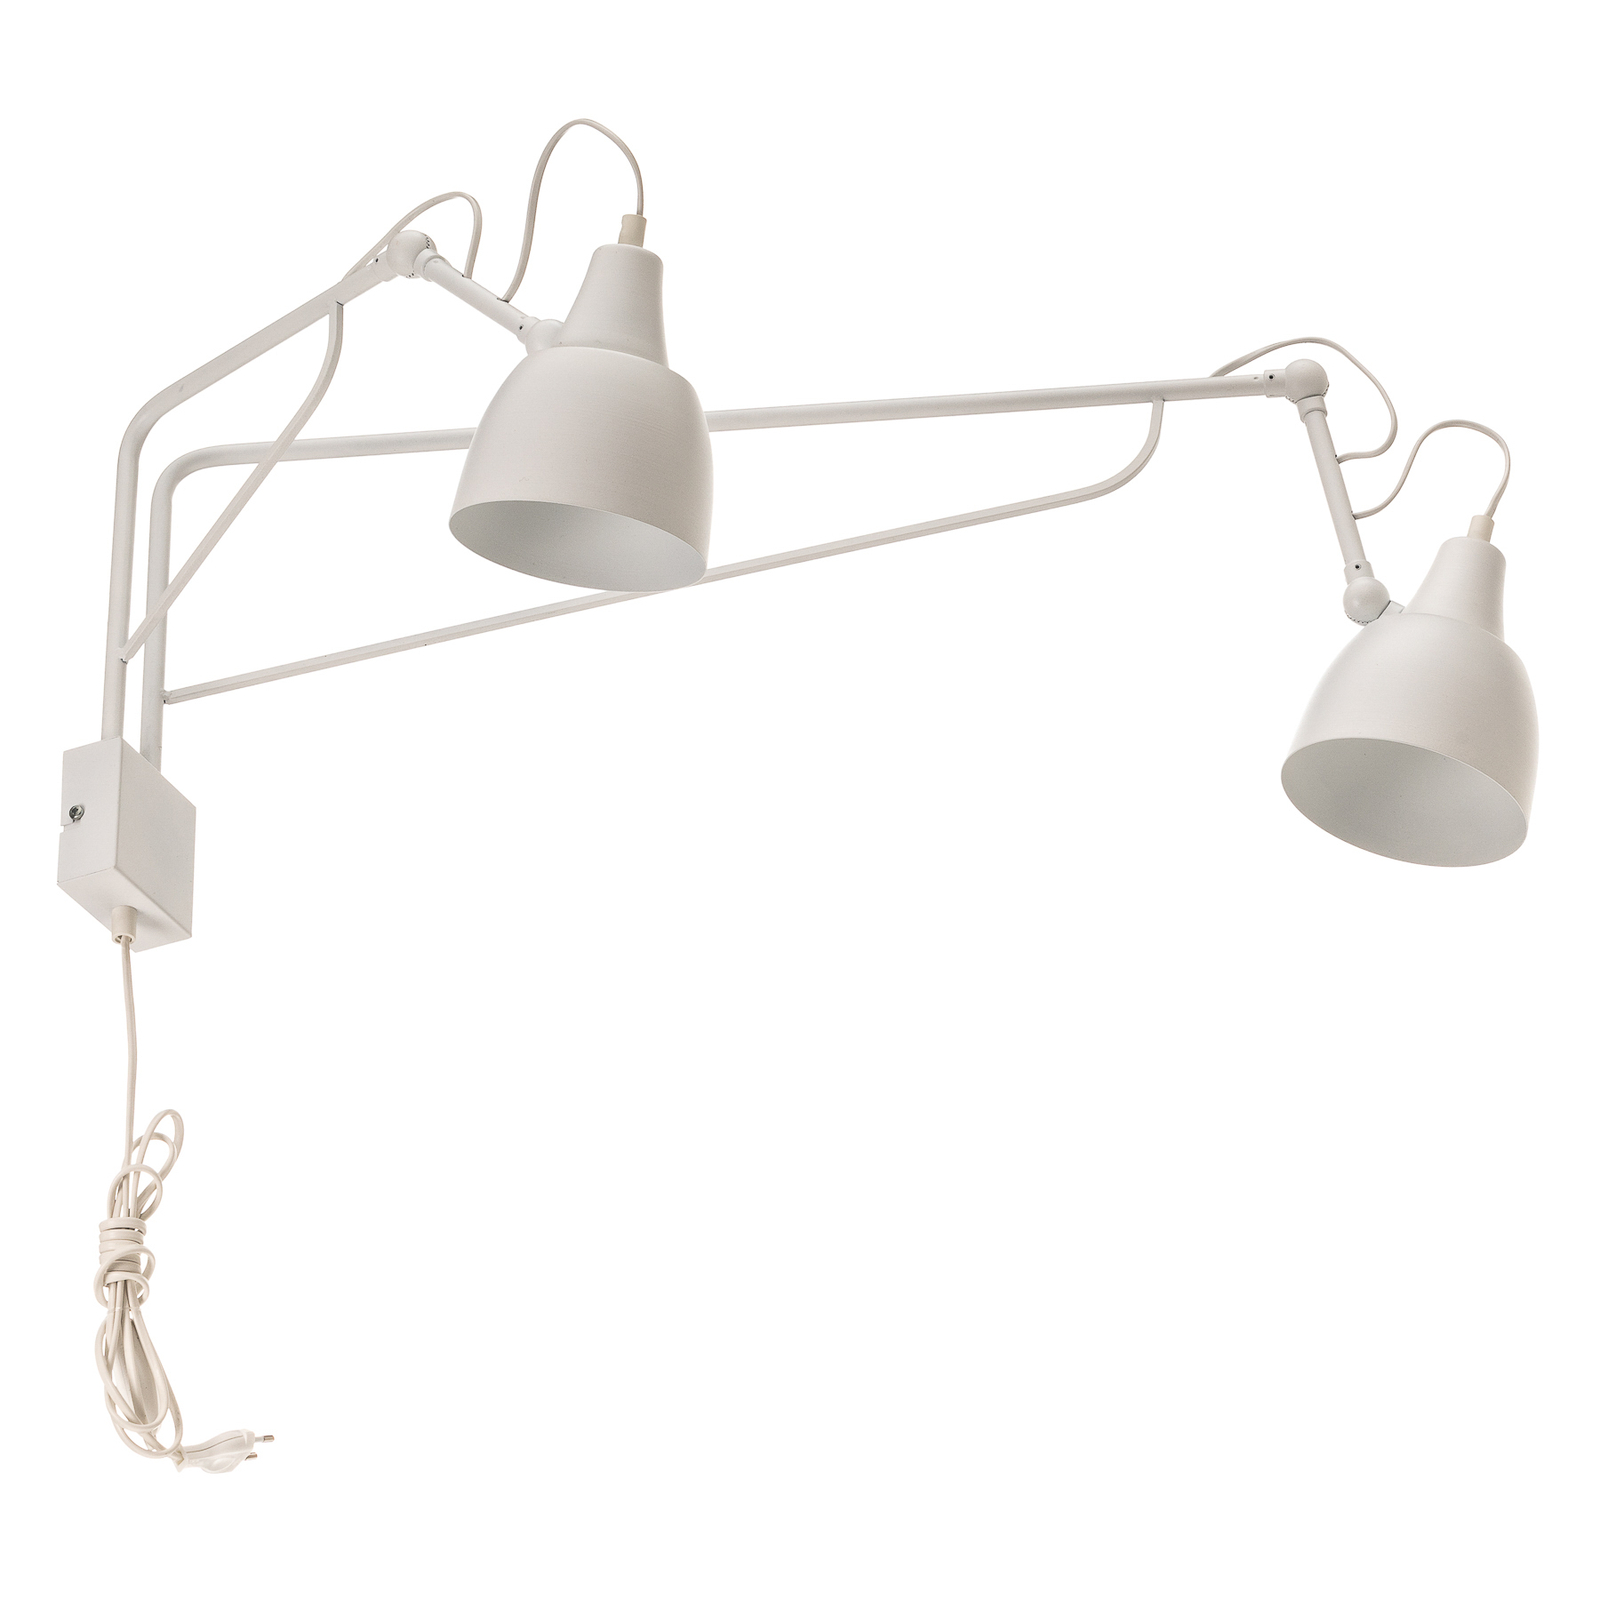 Væglampe 1002 med stik, 2 lyskilder, hvid